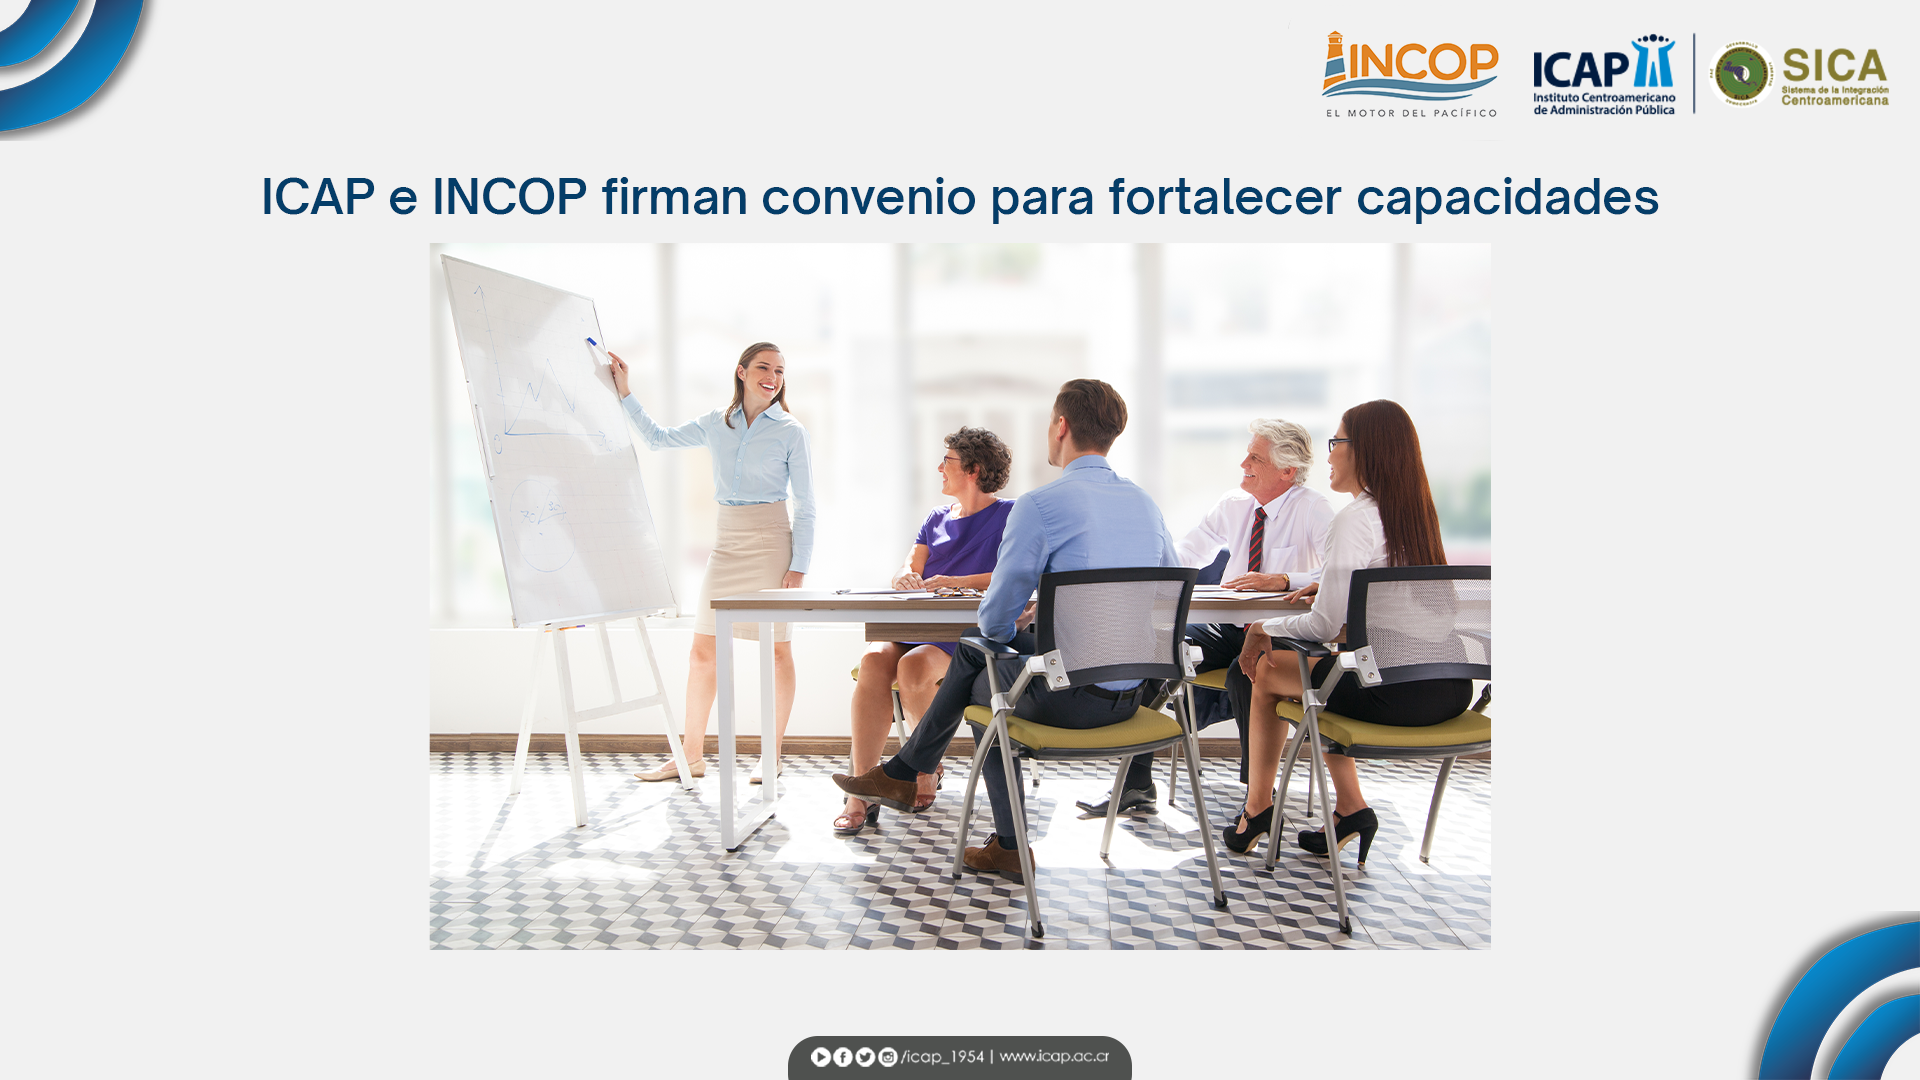 ICAP e INCOP firman convenio para fortalecer capacidades